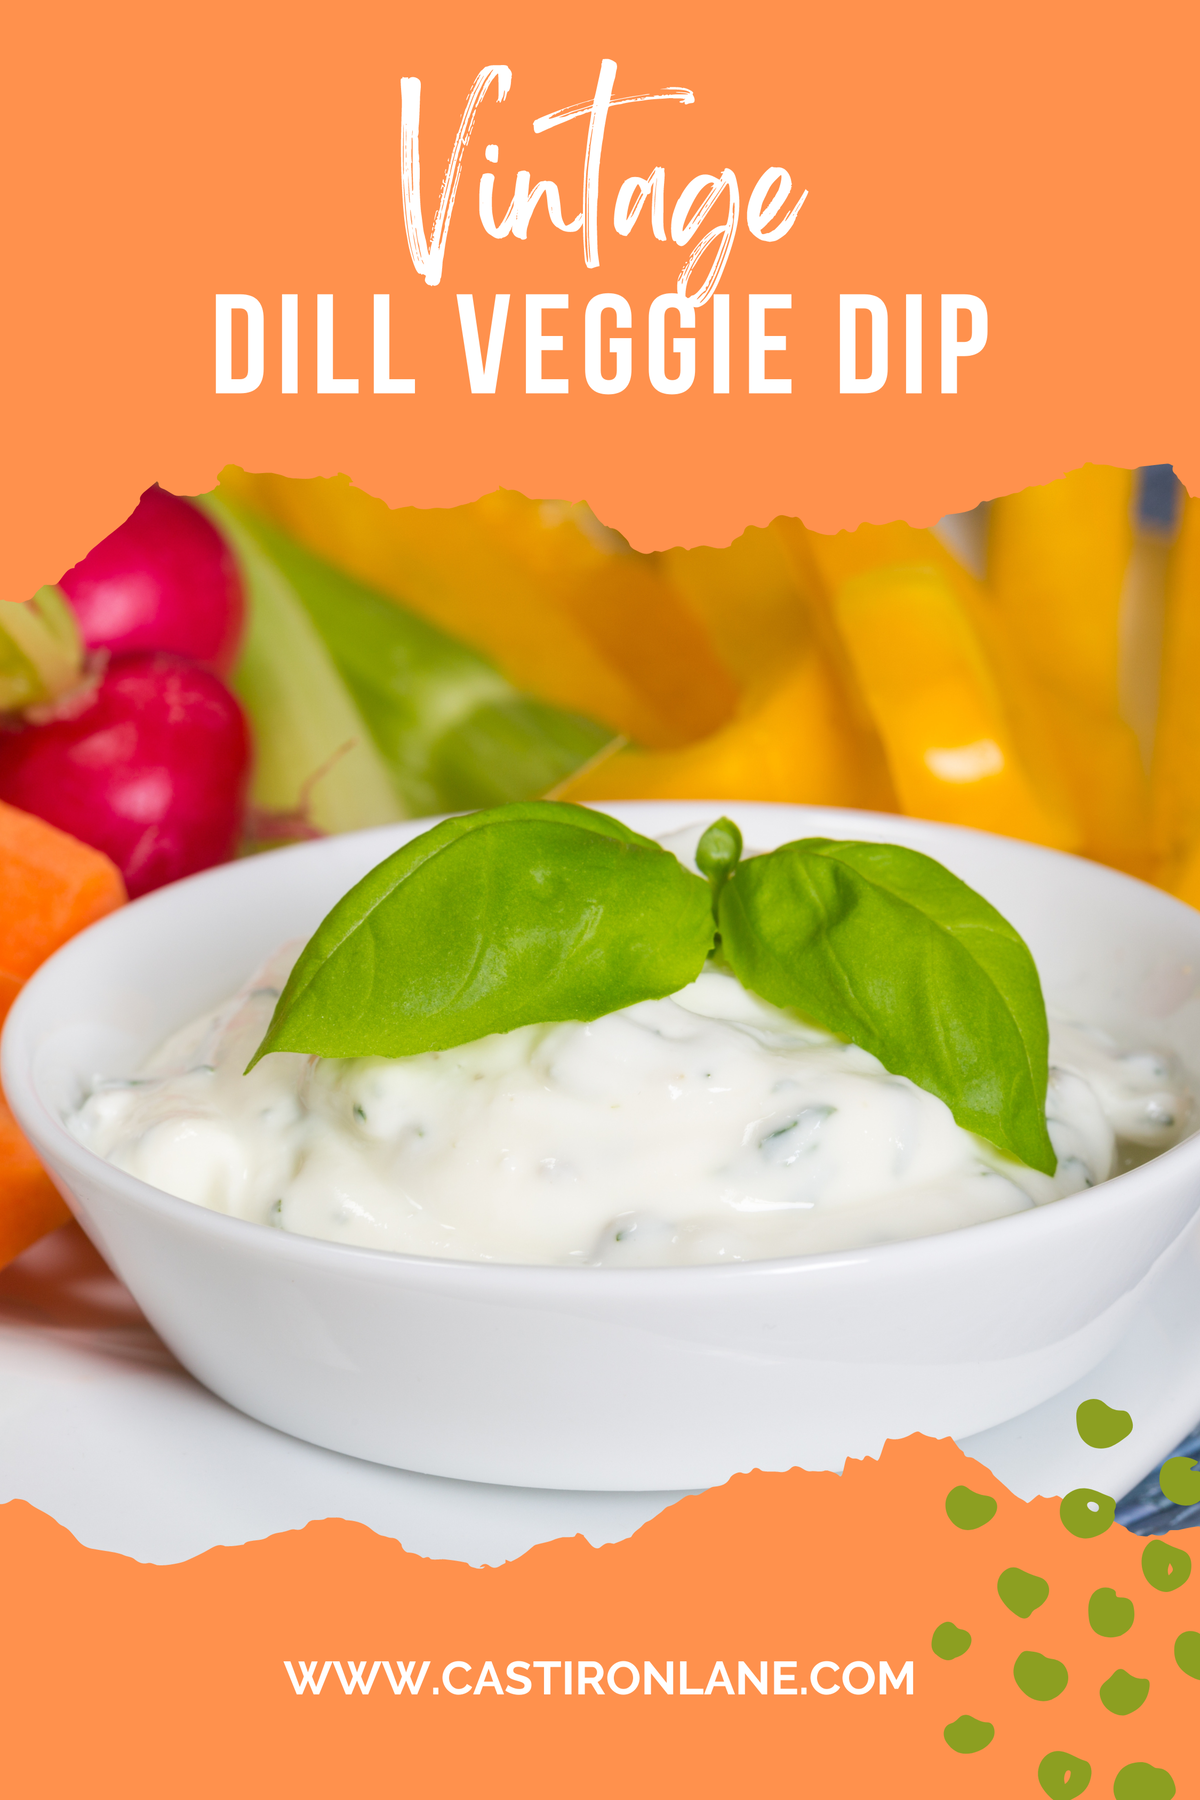 veggie vegetable dill dip